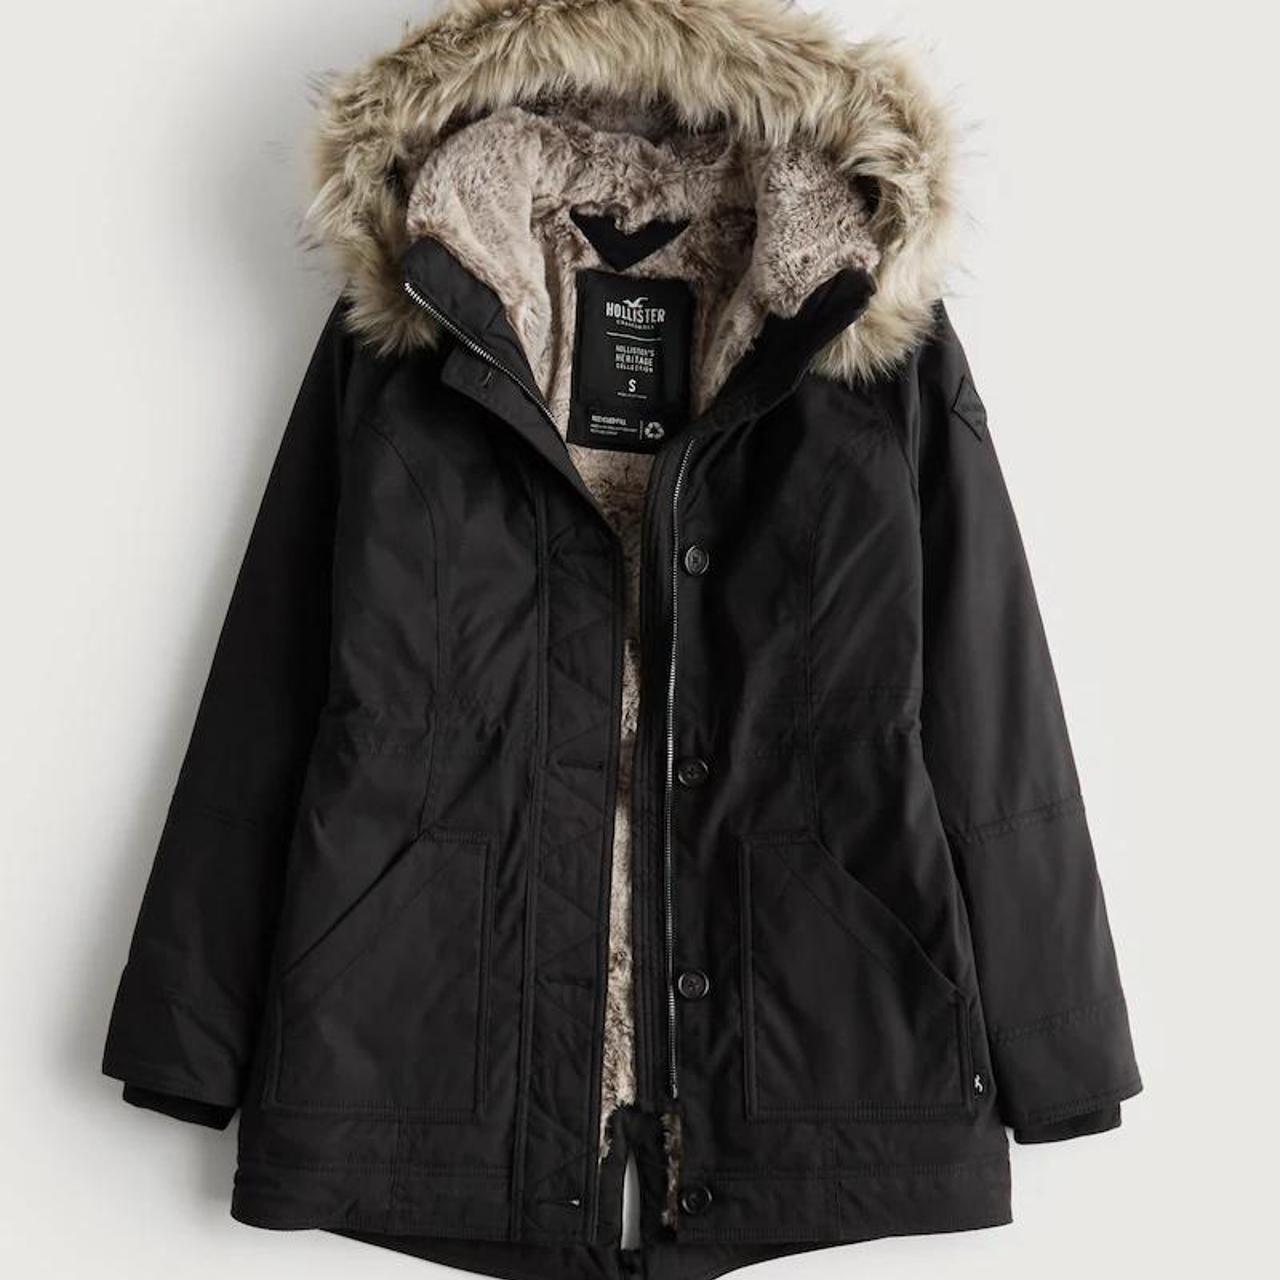 Faux Fur Lined Parka Jacket Size 6 / xxs Brand... - Depop